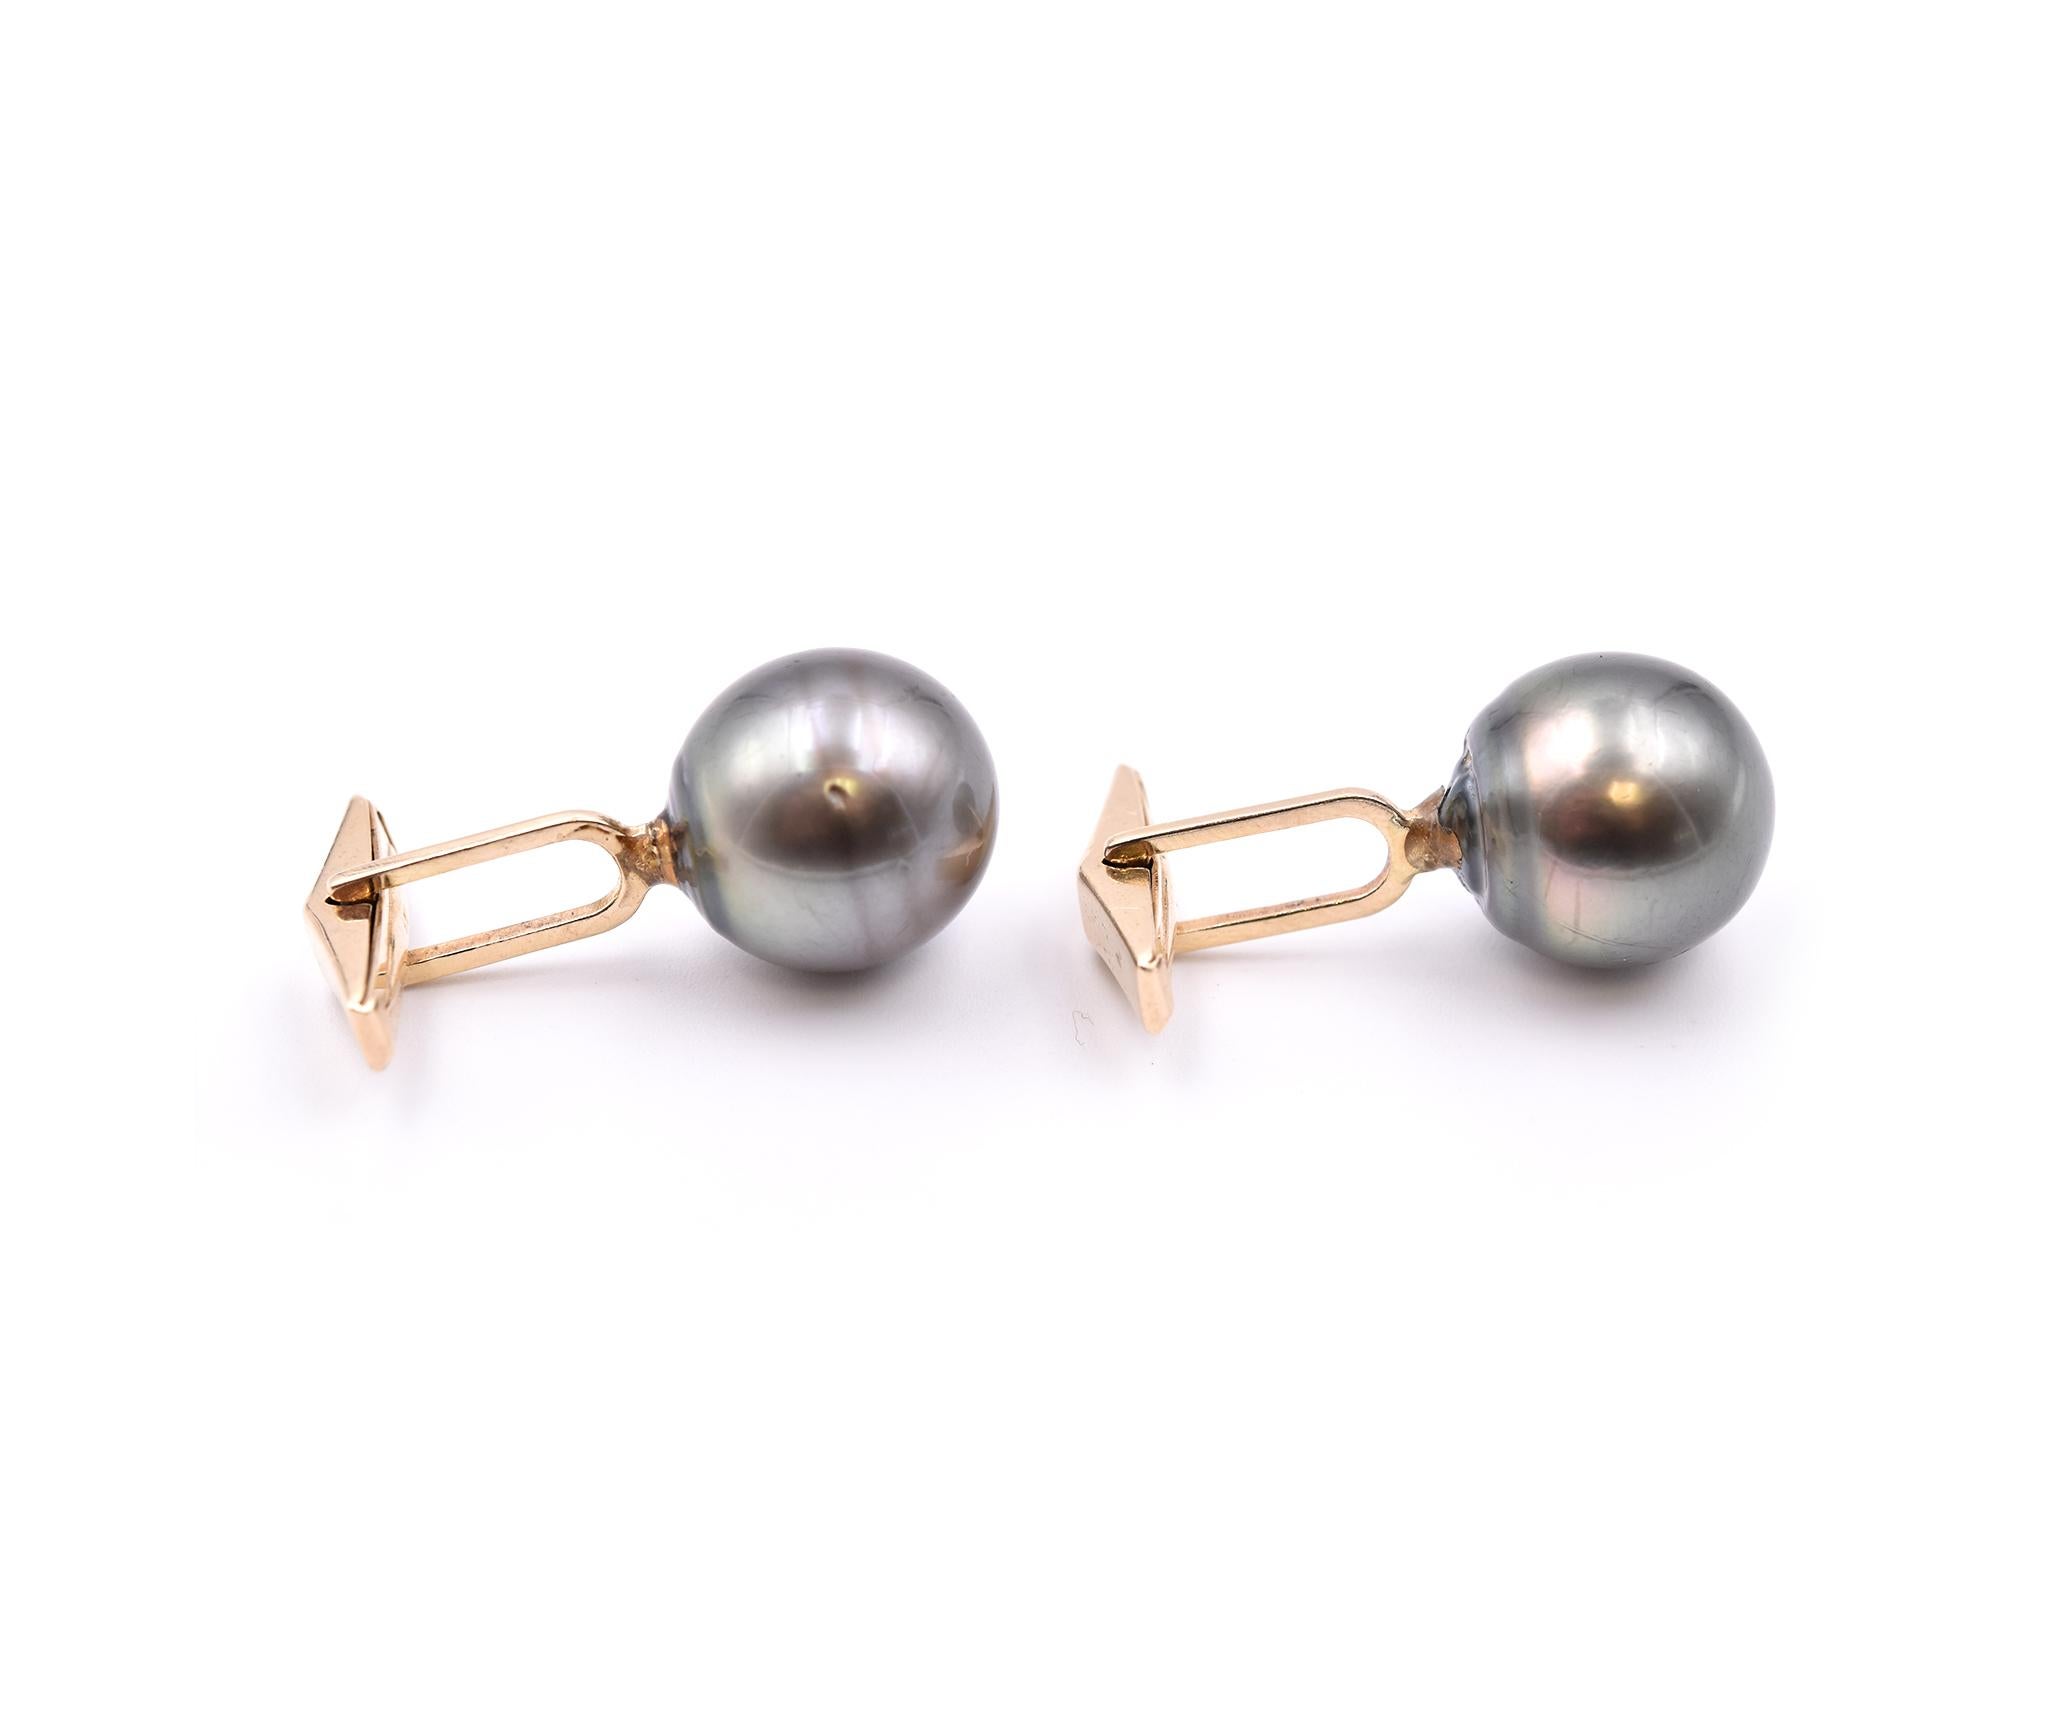 Designer: Custom
Material: 14 Karat Yellow Gold
Pearls: Round Tahitian Black Pearls
Dimensions: pearls measure 14.6mm-15.20mm
Weight: 12.75 grams